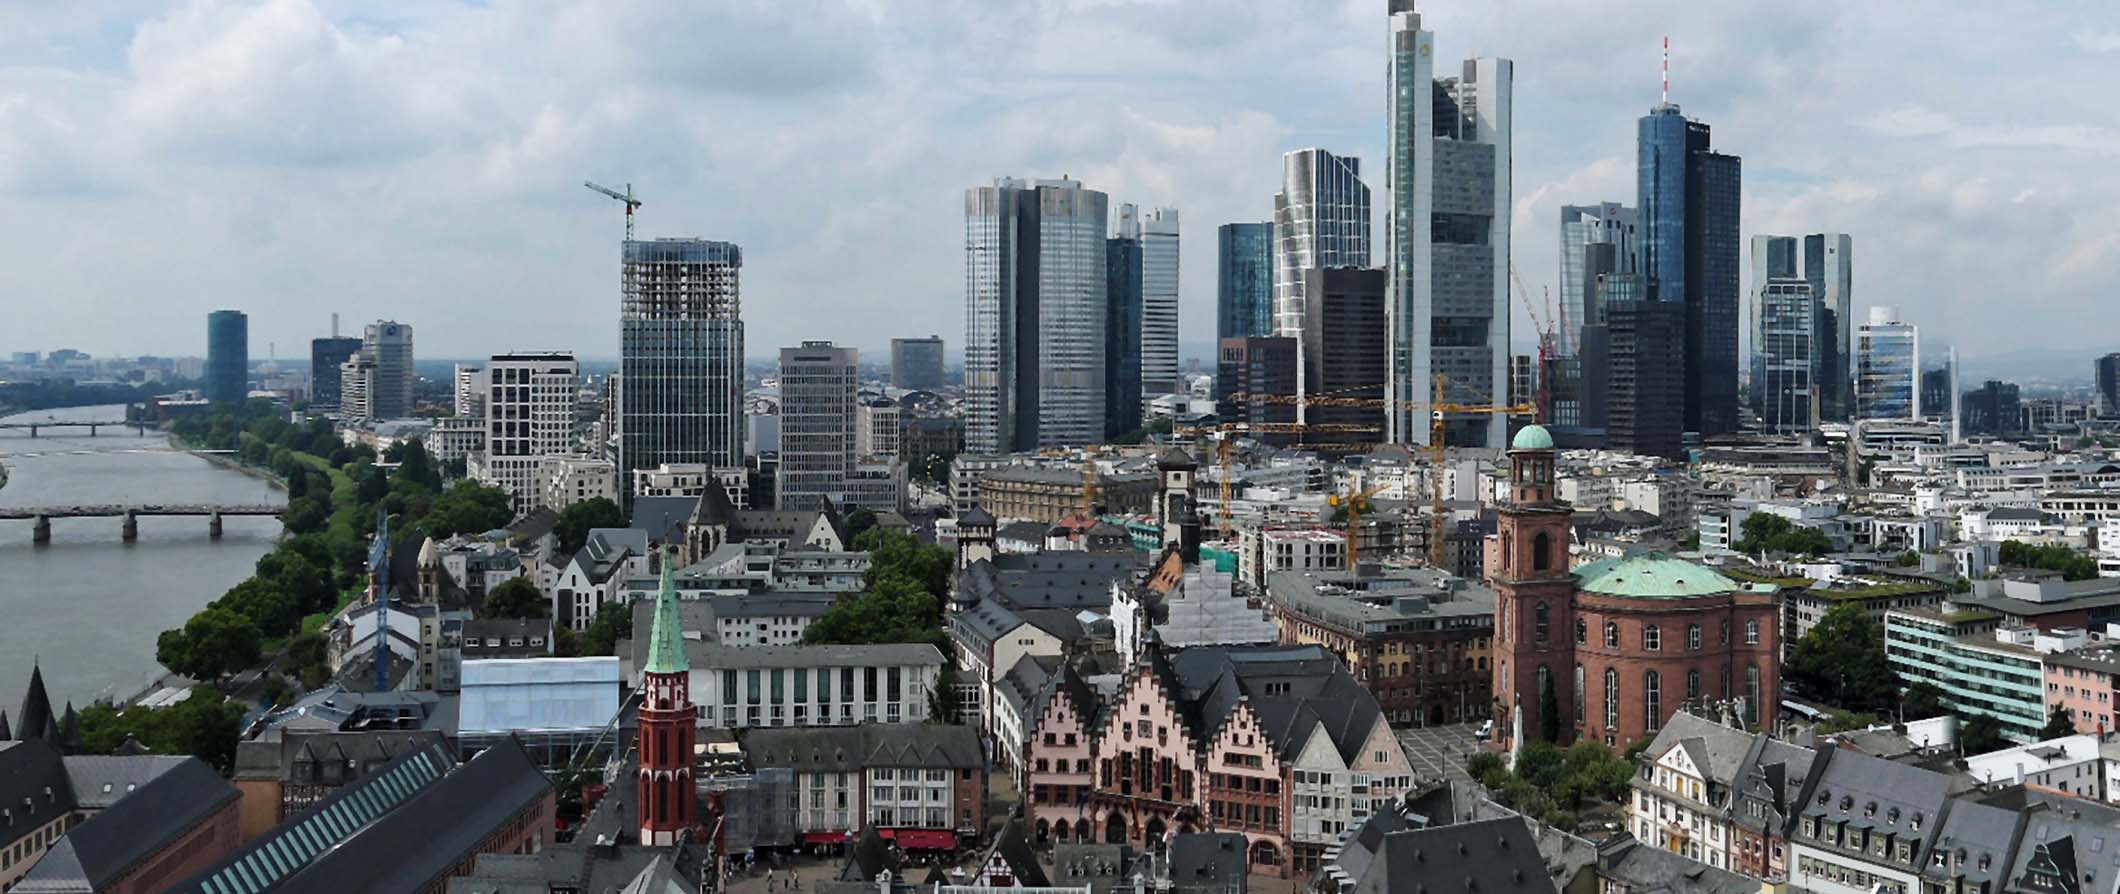 Een luchtfoto van het centrum van Frankfurt, Duitsland met talloze wolkenkrabbers